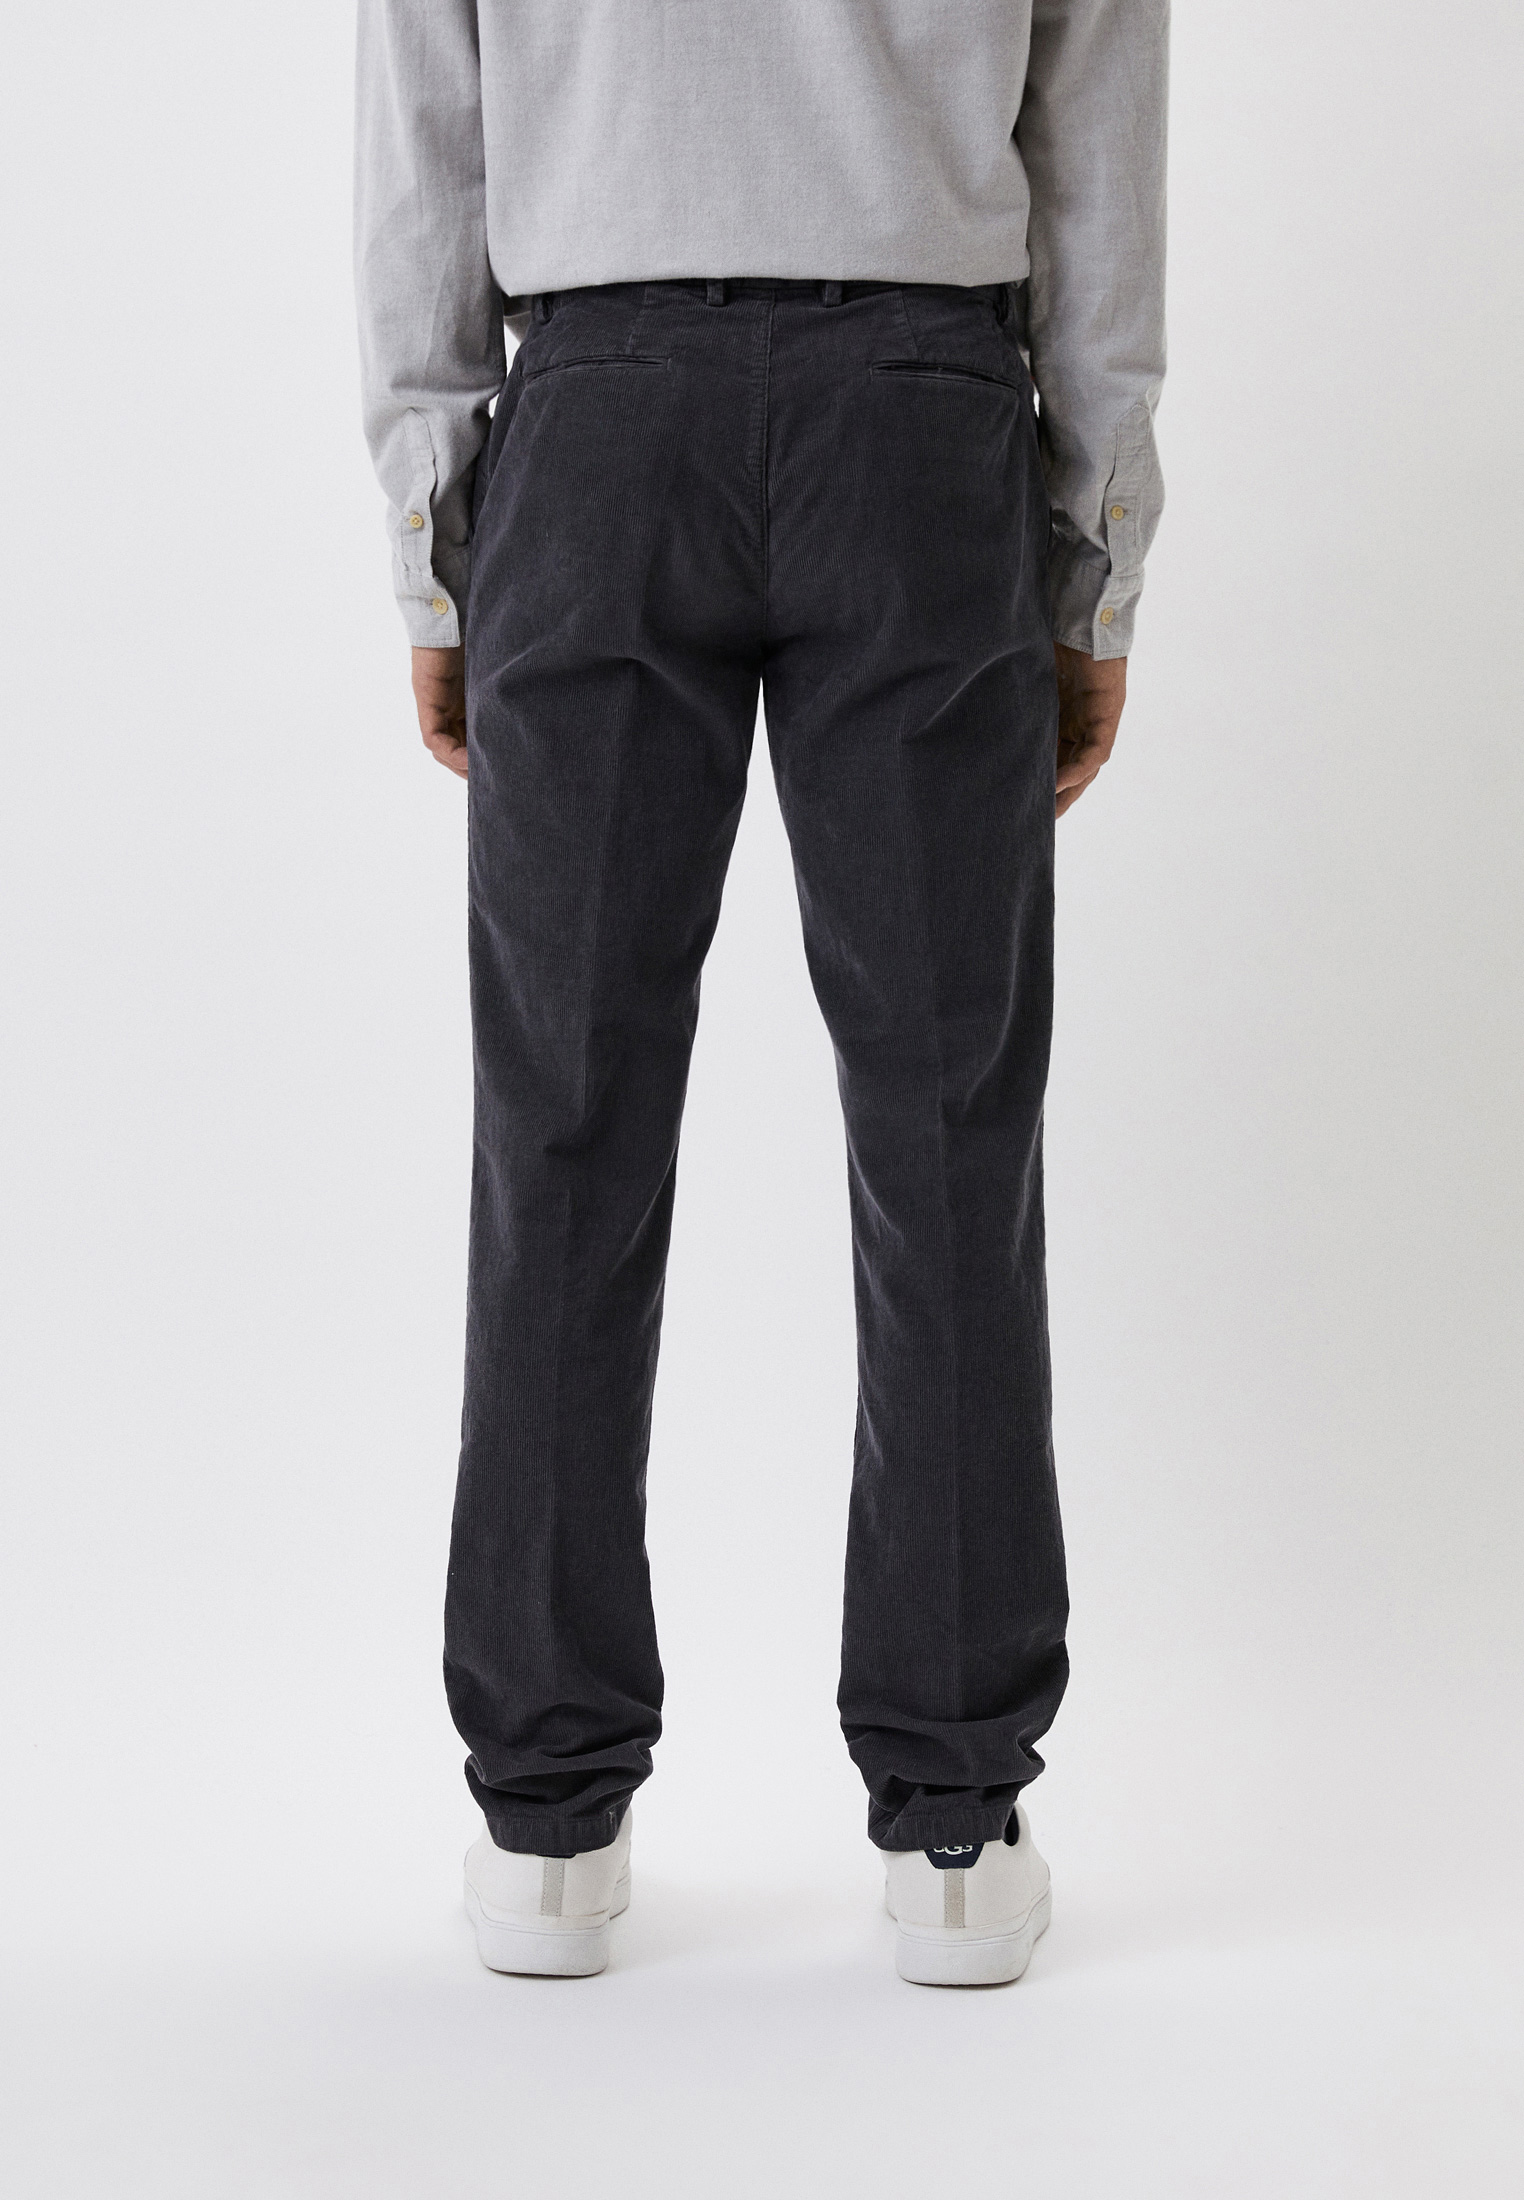 Мужские повседневные брюки Trussardi (Труссарди) 52P00000-1T005985: изображение 3